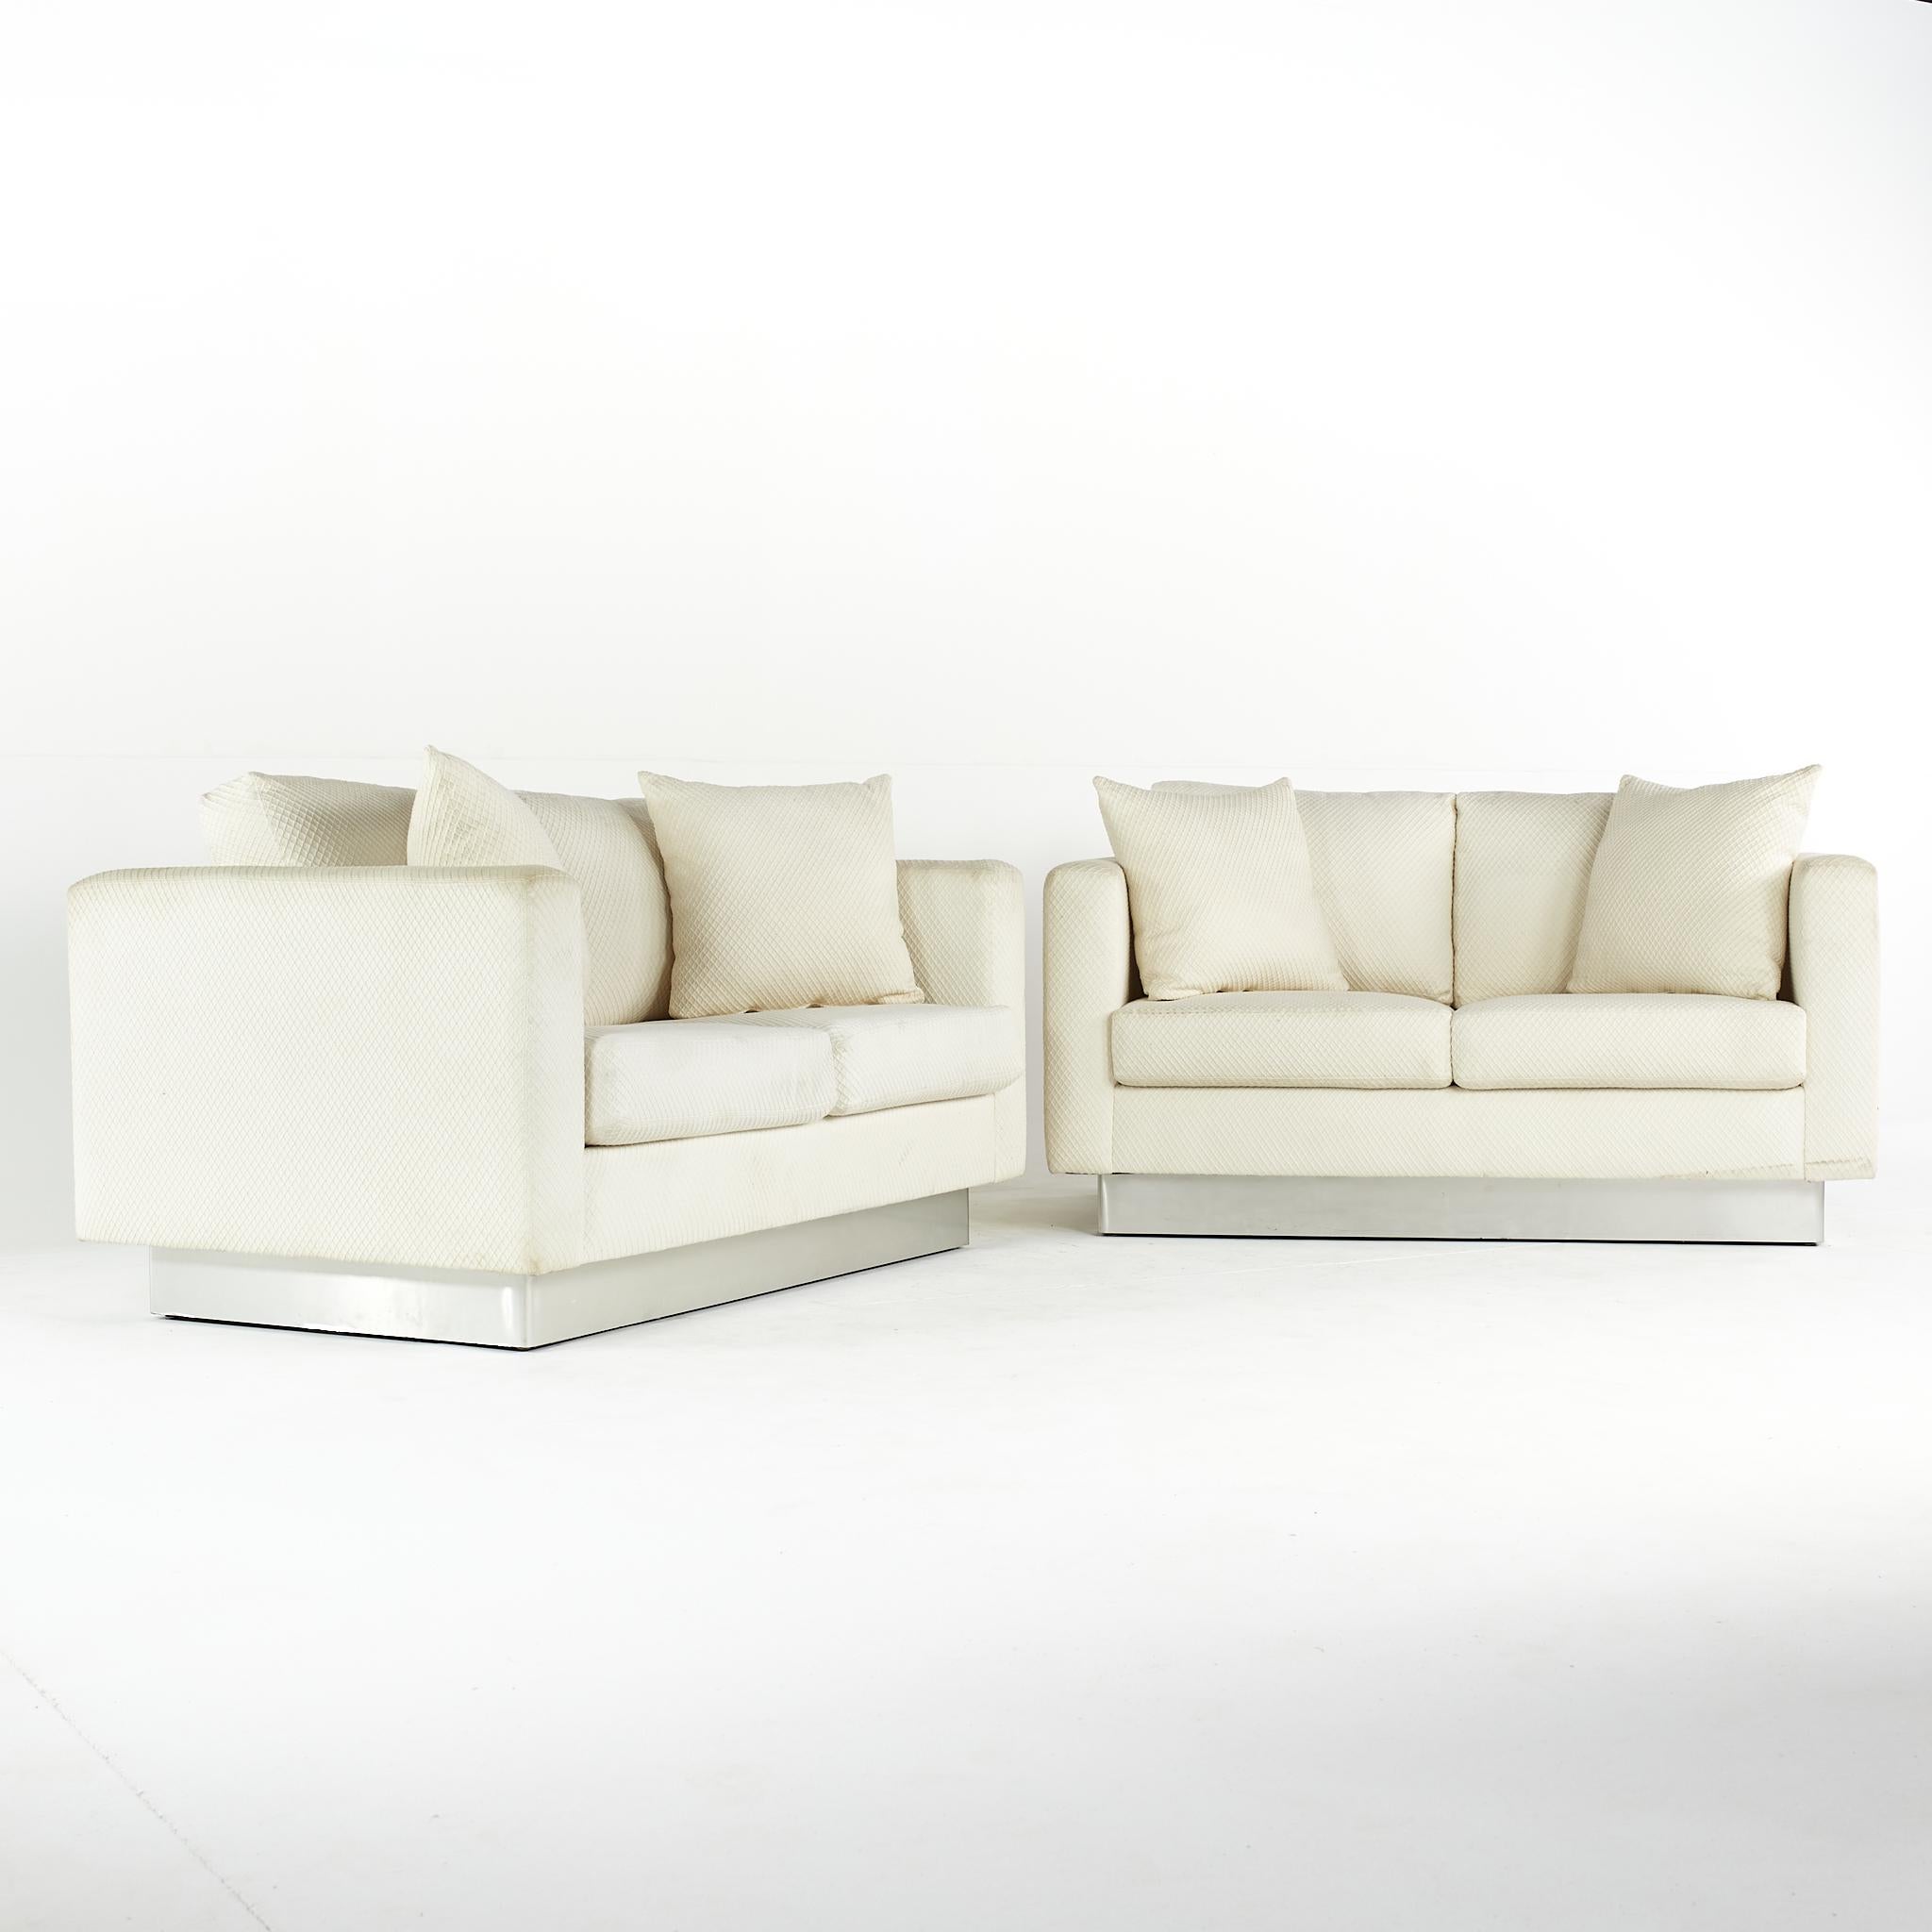 Loveseat Milo Baugman Style mid century modernist chrome base - paire

Ce canapé mesure : 60 de large x 37 de profond x 28 pouces de haut, avec une hauteur d'assise de 18 et une hauteur d'accoudoir de 28 pouces

Tous les meubles peuvent être